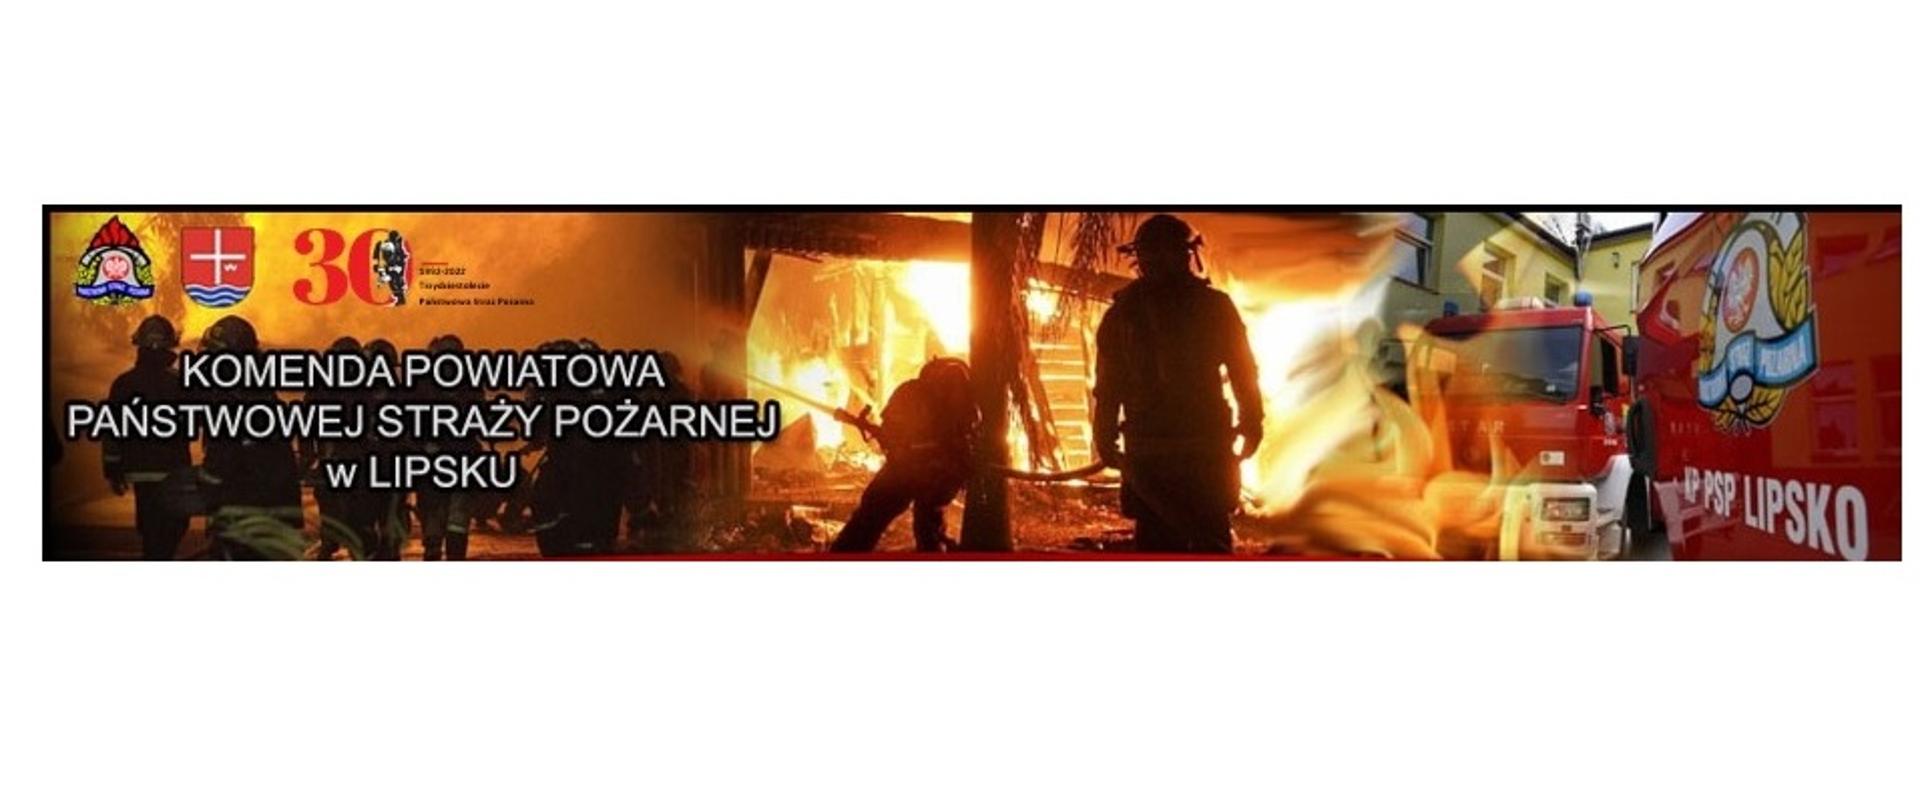 Zdjęcie przedstawia ogólny zarys działań strażaków, ukazuje działania ratownicze, gaszenie pożarów, pojazd pożarniczy. Przedstawione są również logo PSP, Powiatu lipskiego oraz logo 30 lecia PSP.